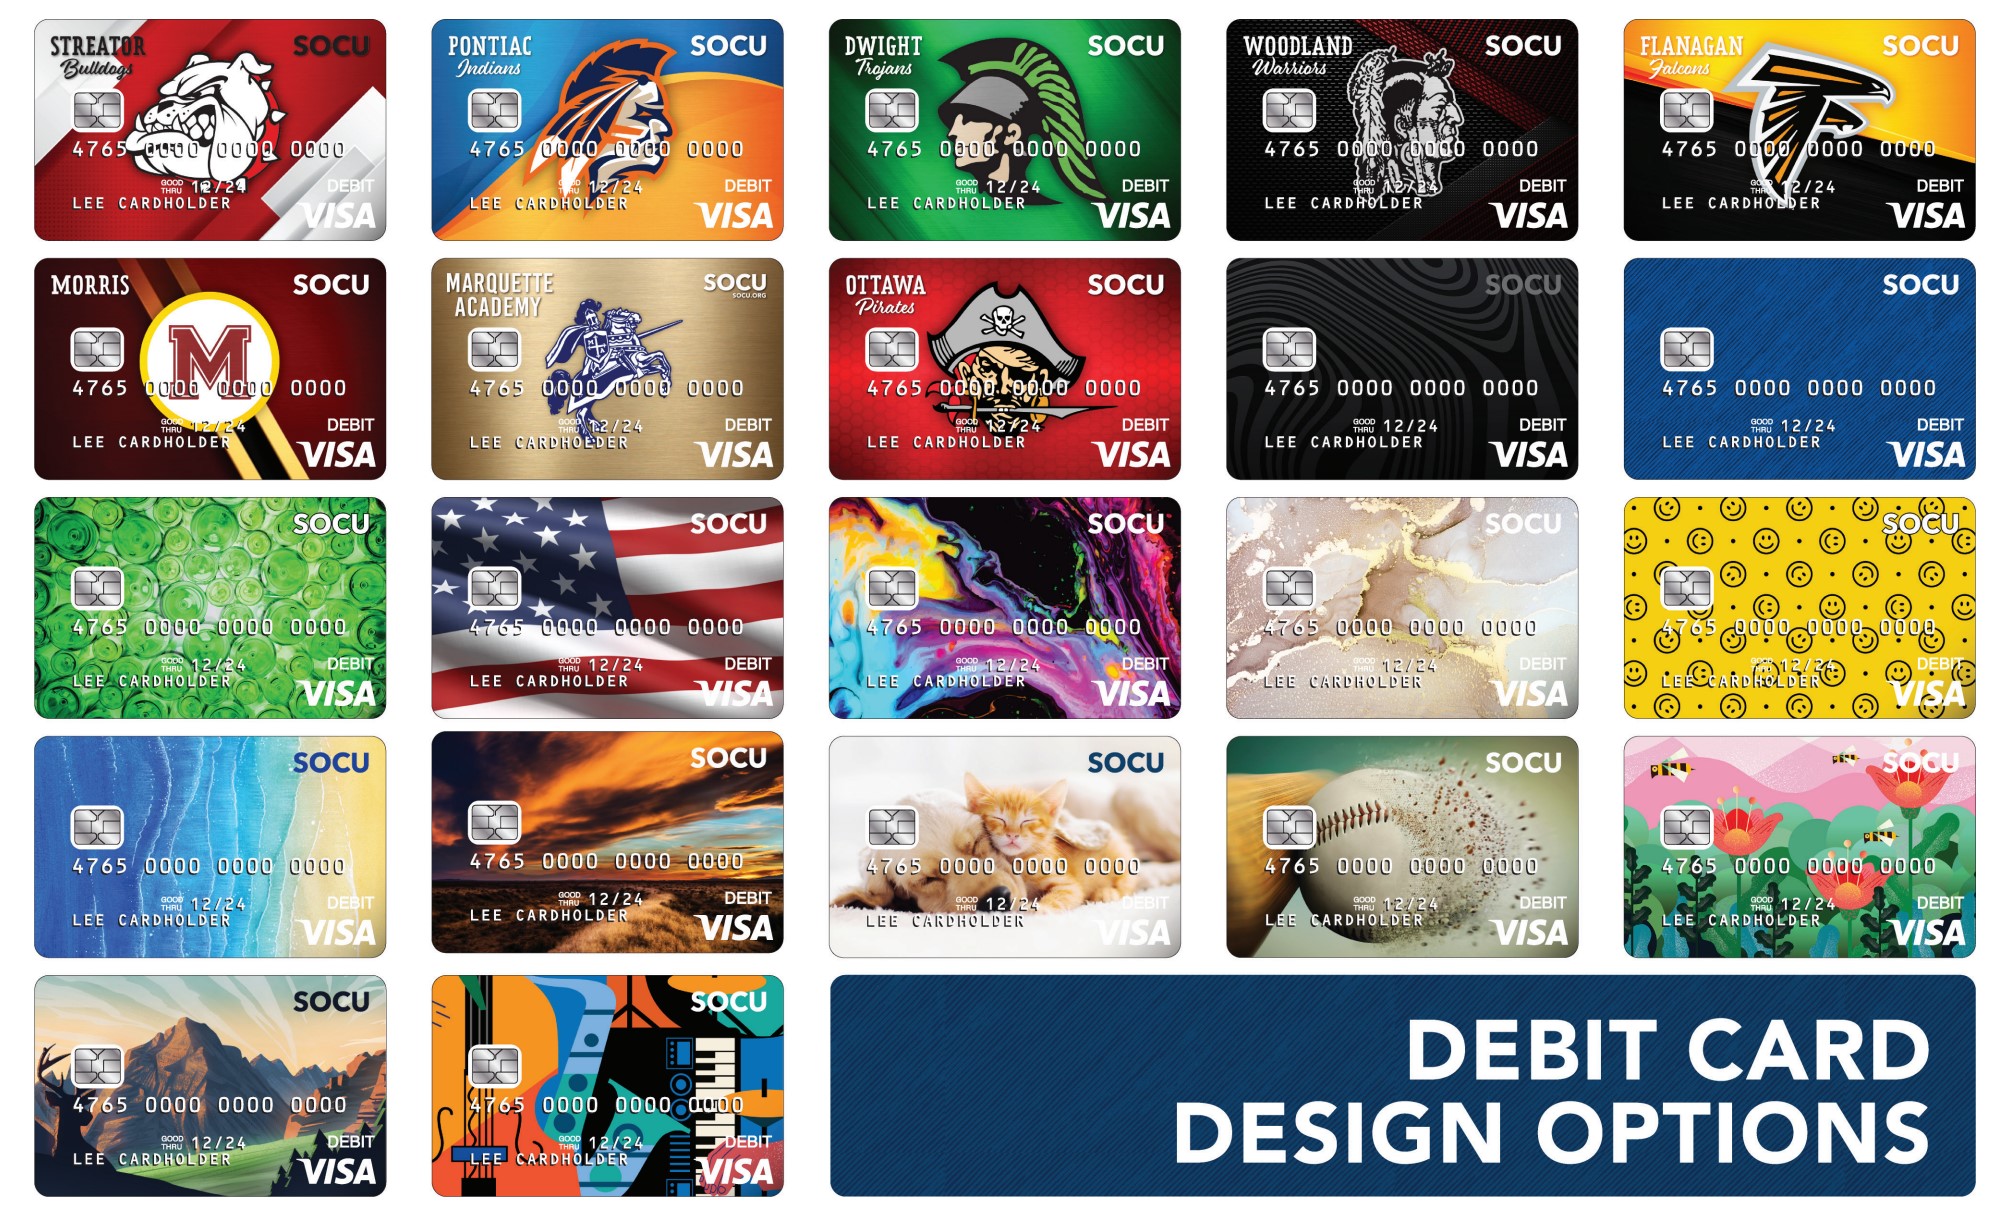 SOCU's debit card design choices.